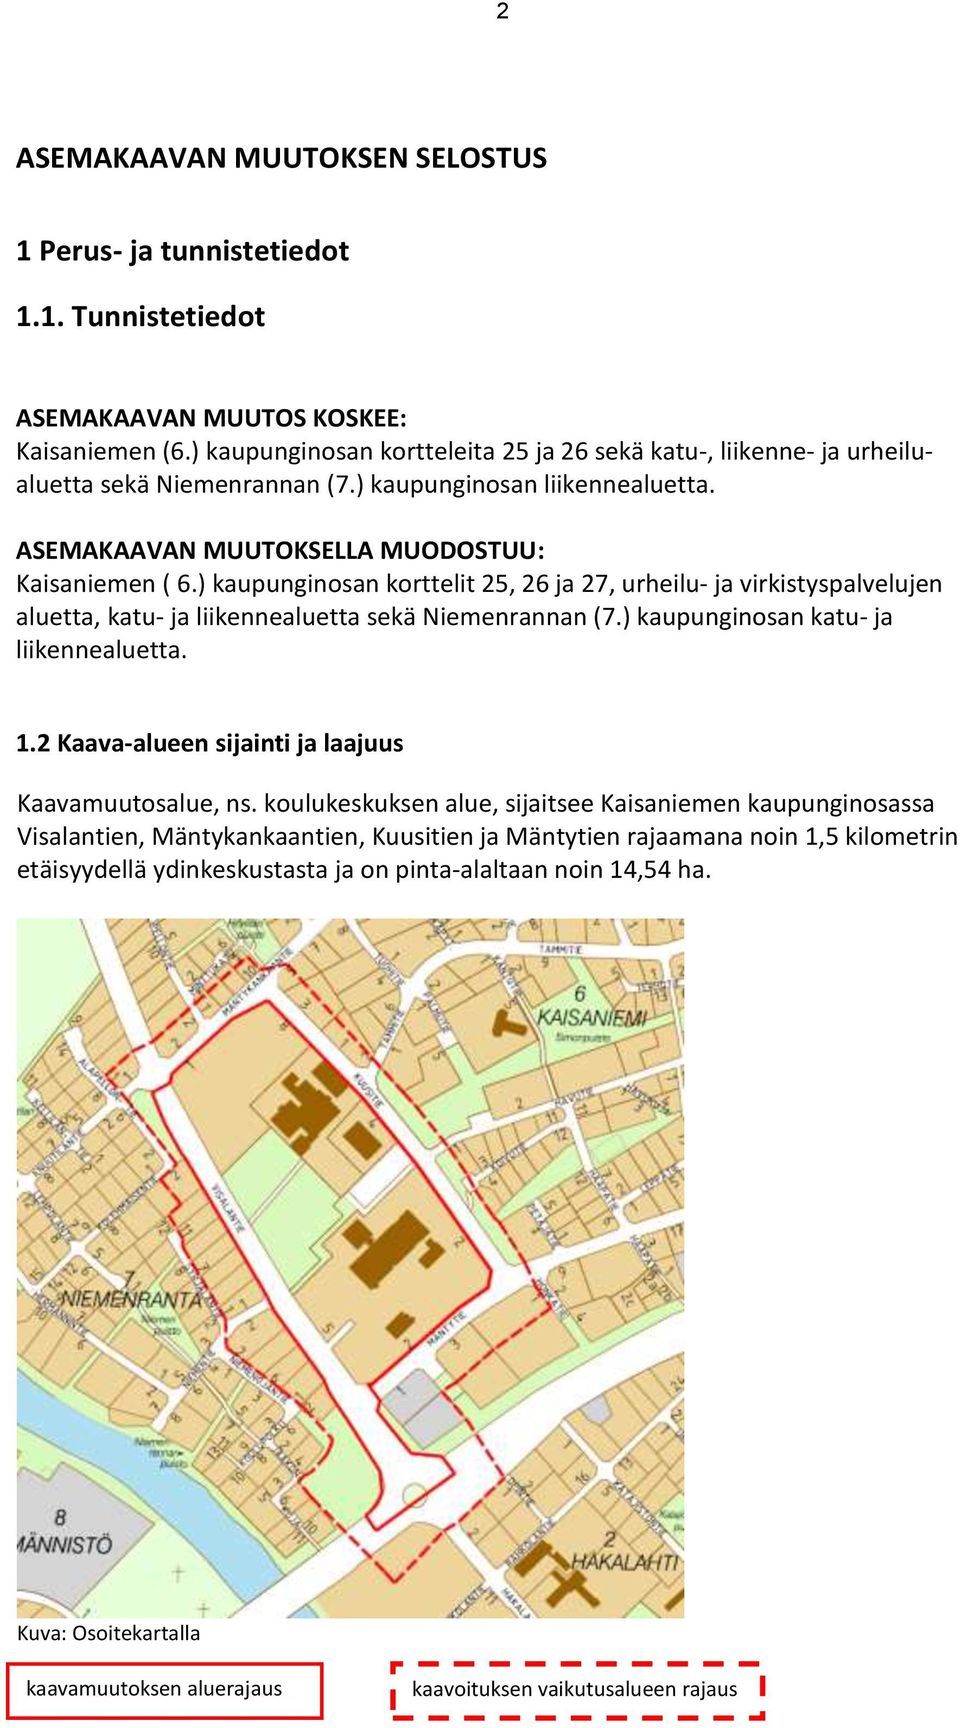 ) kaupunginosan korttelit 25, 26 ja 27, urheilu- ja virkistyspalvelujen aluetta, katu- ja liikennealuetta sekä Niemenrannan (7.) kaupunginosan katu- ja liikennealuetta. 1.